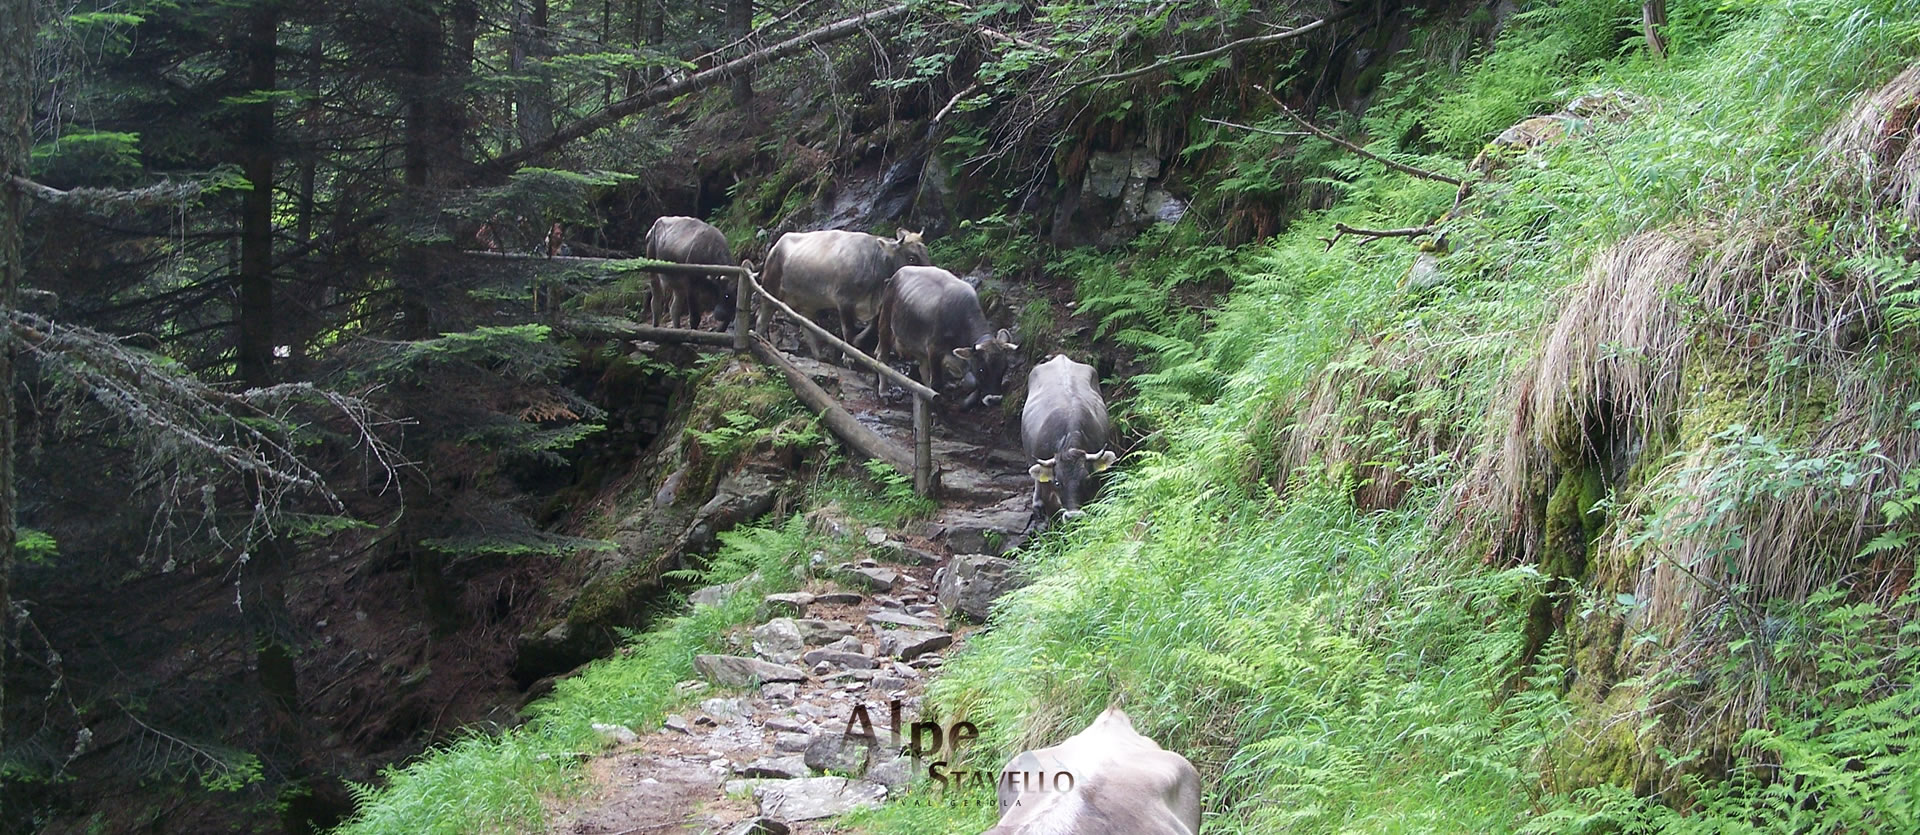 Azienda agricola Alpe Stavello - Pascolo degli animali Valgerola